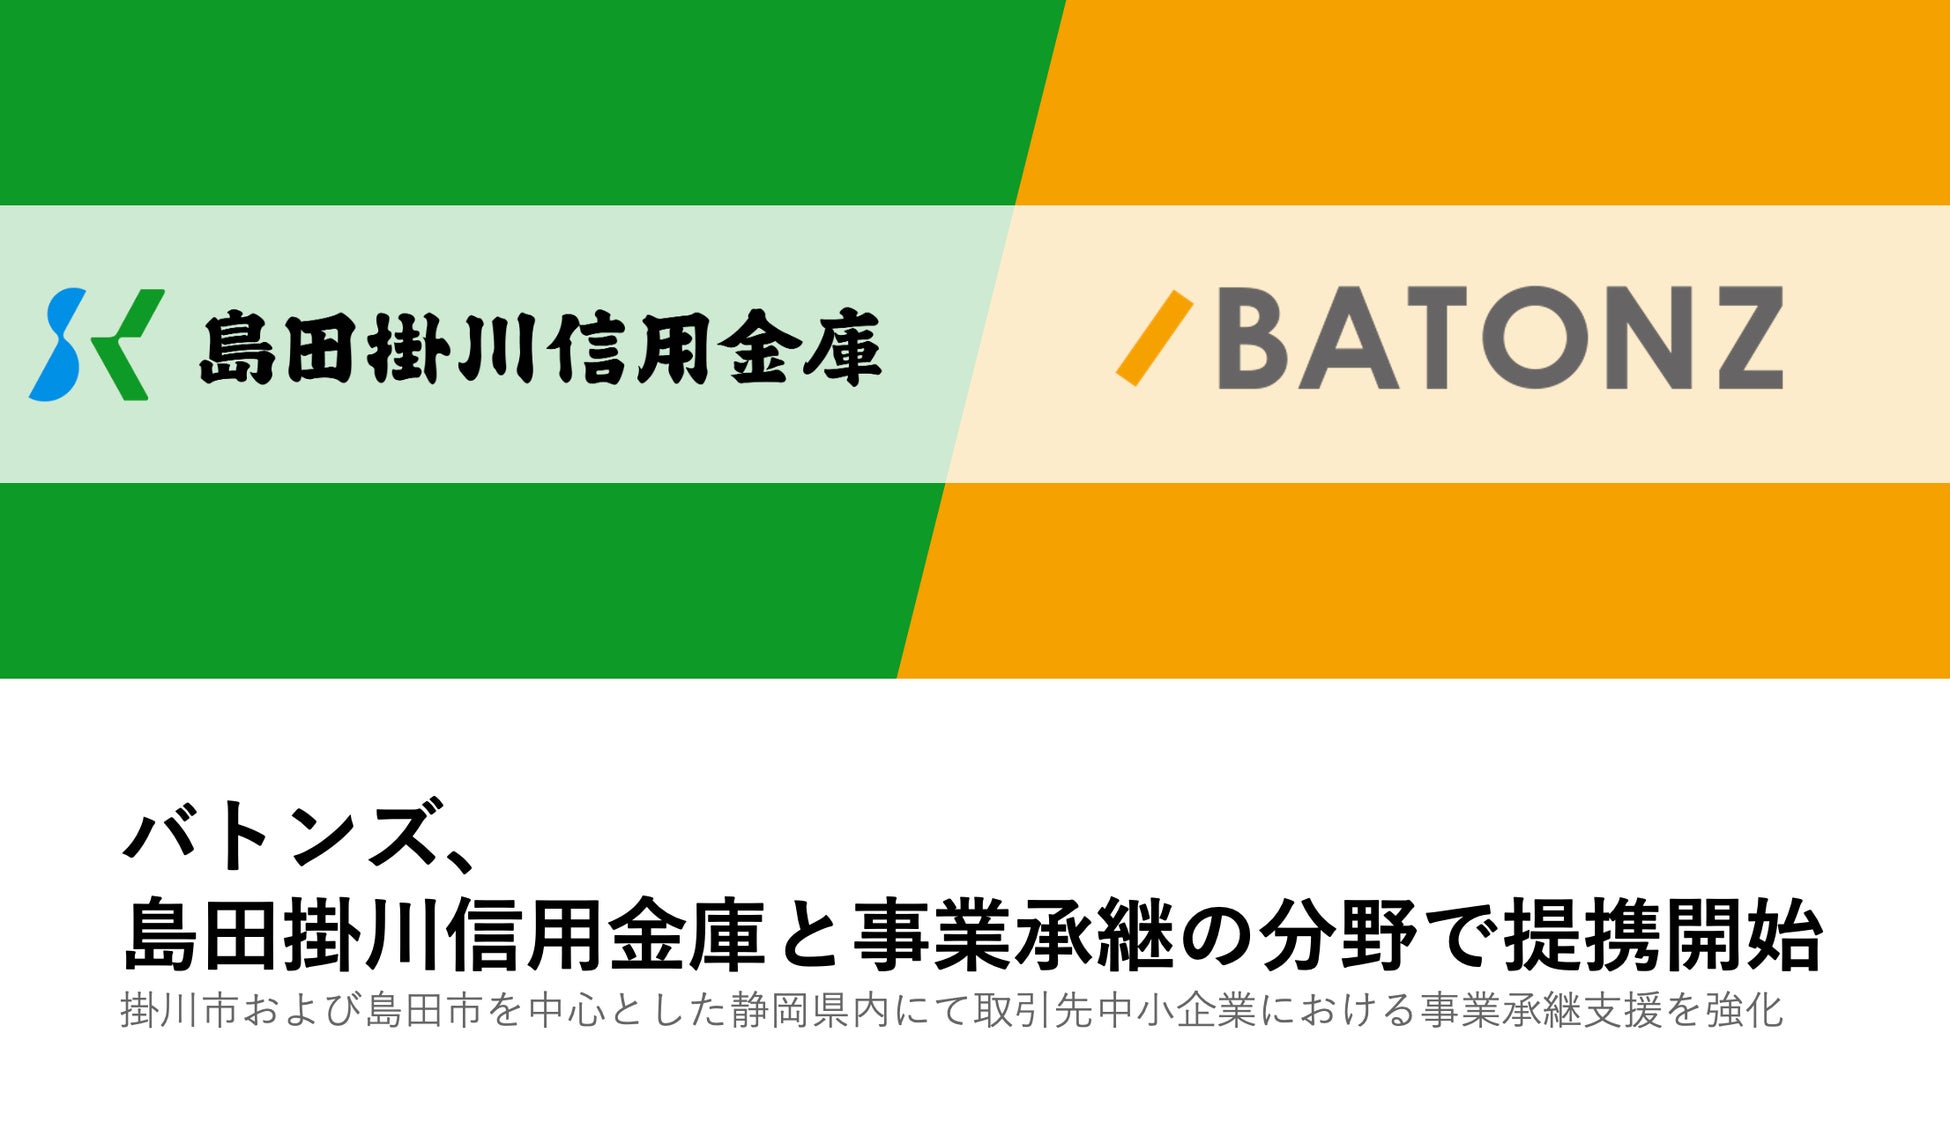 バトンズ、島田掛川信用金庫と事業承継の分野で提携開始